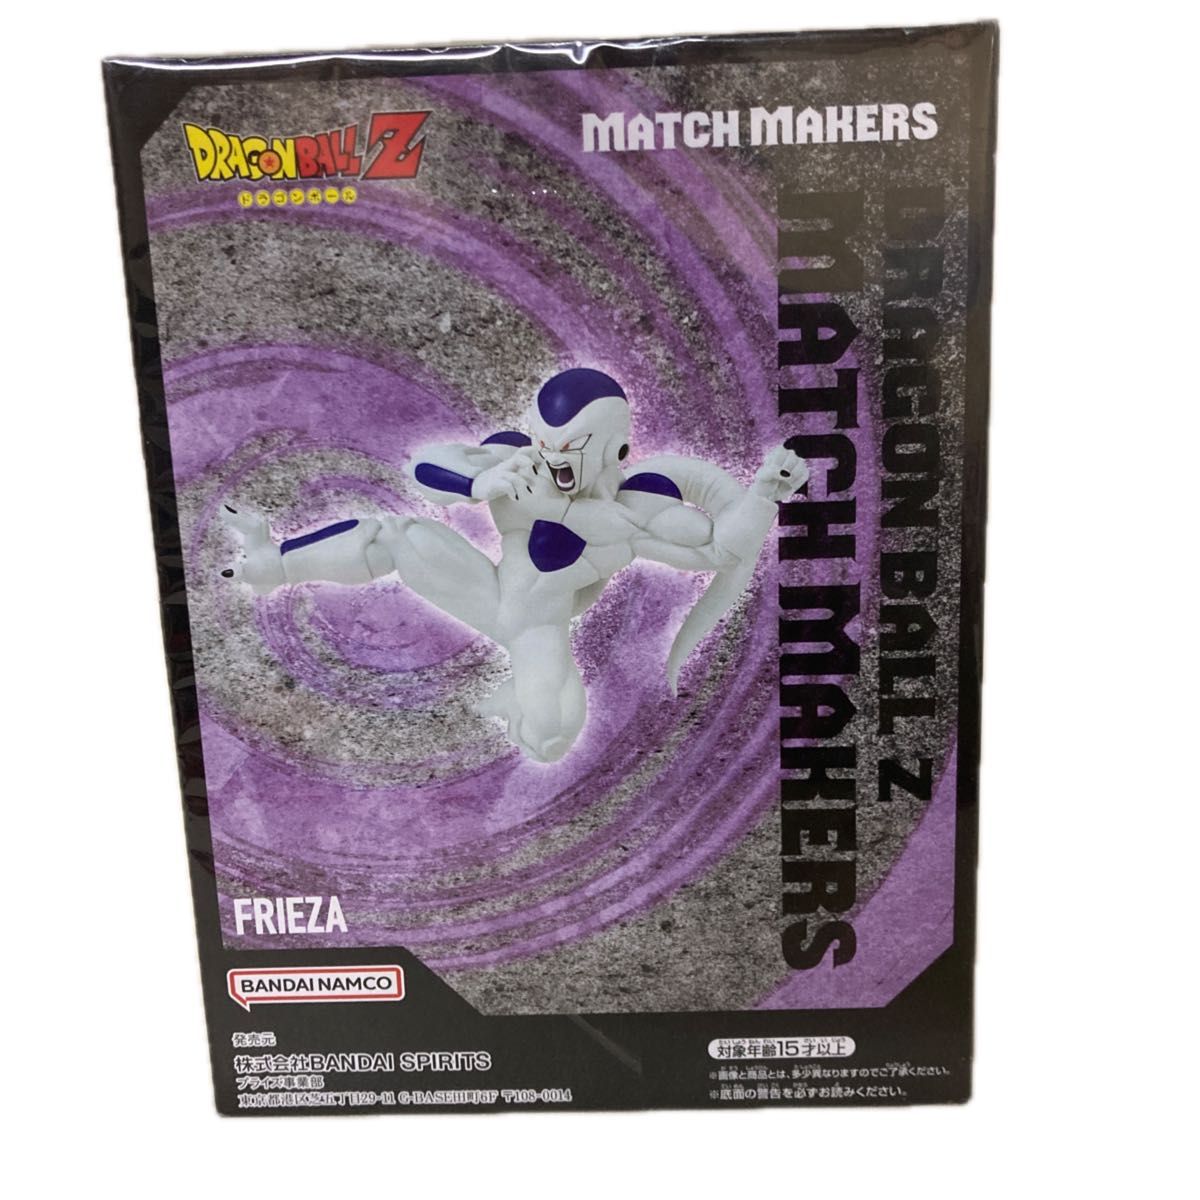 ドラゴンボ ールZ match markersフリーザーのフィギュア